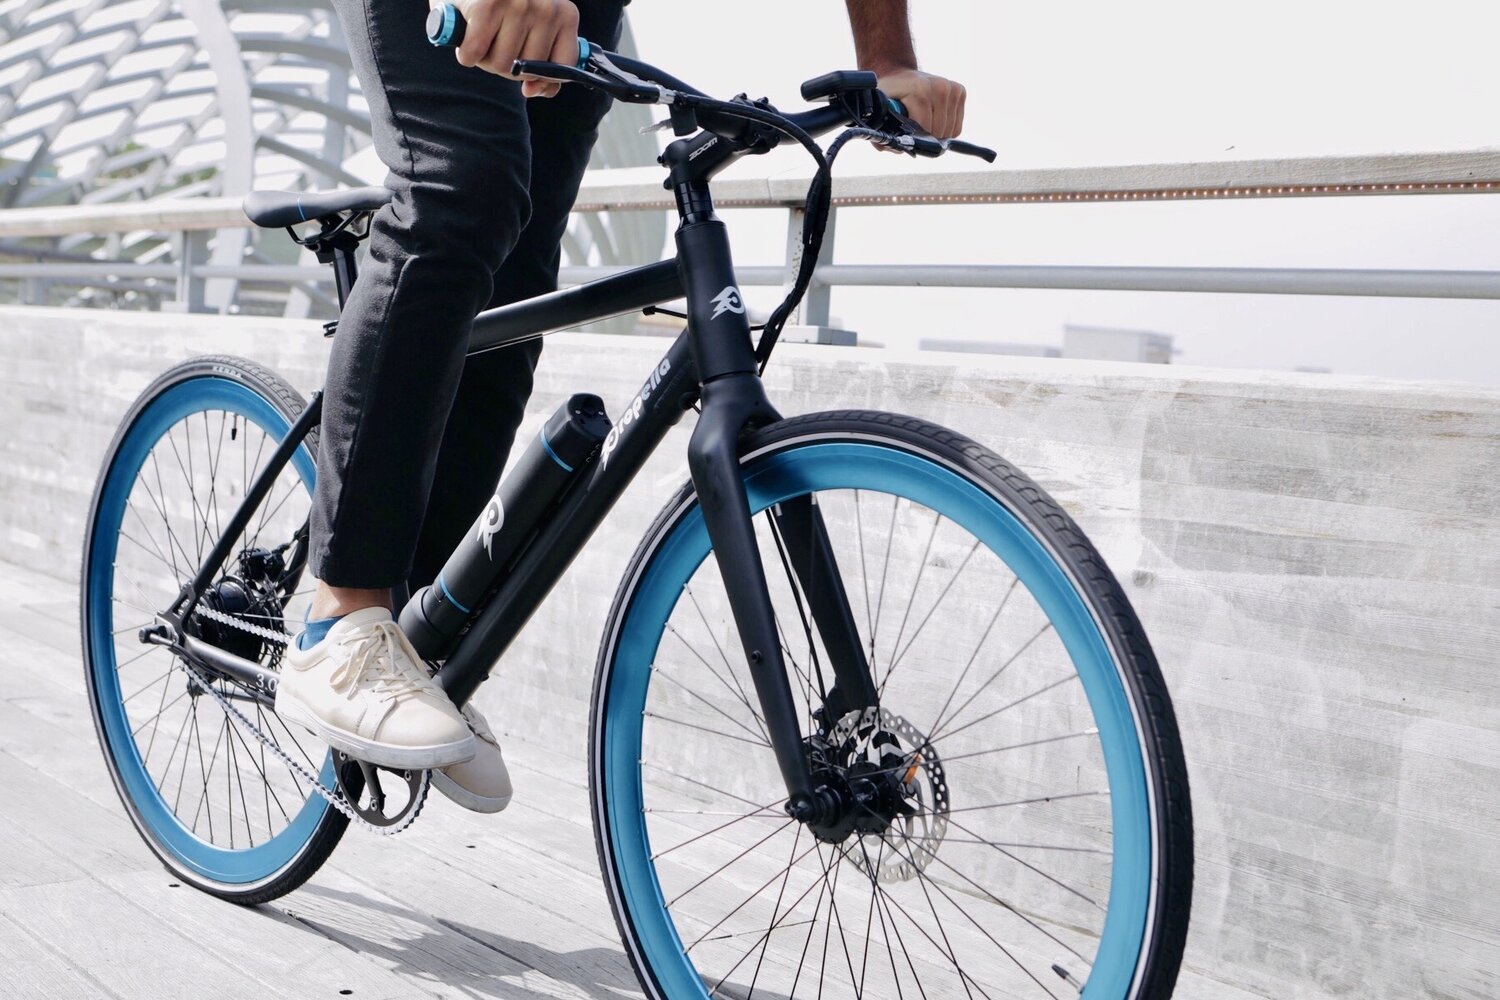 دوچرخه الکتریکی با گیربکس 7 سرعته معرفی شد؛ تب برقی در بازارهای مختلف